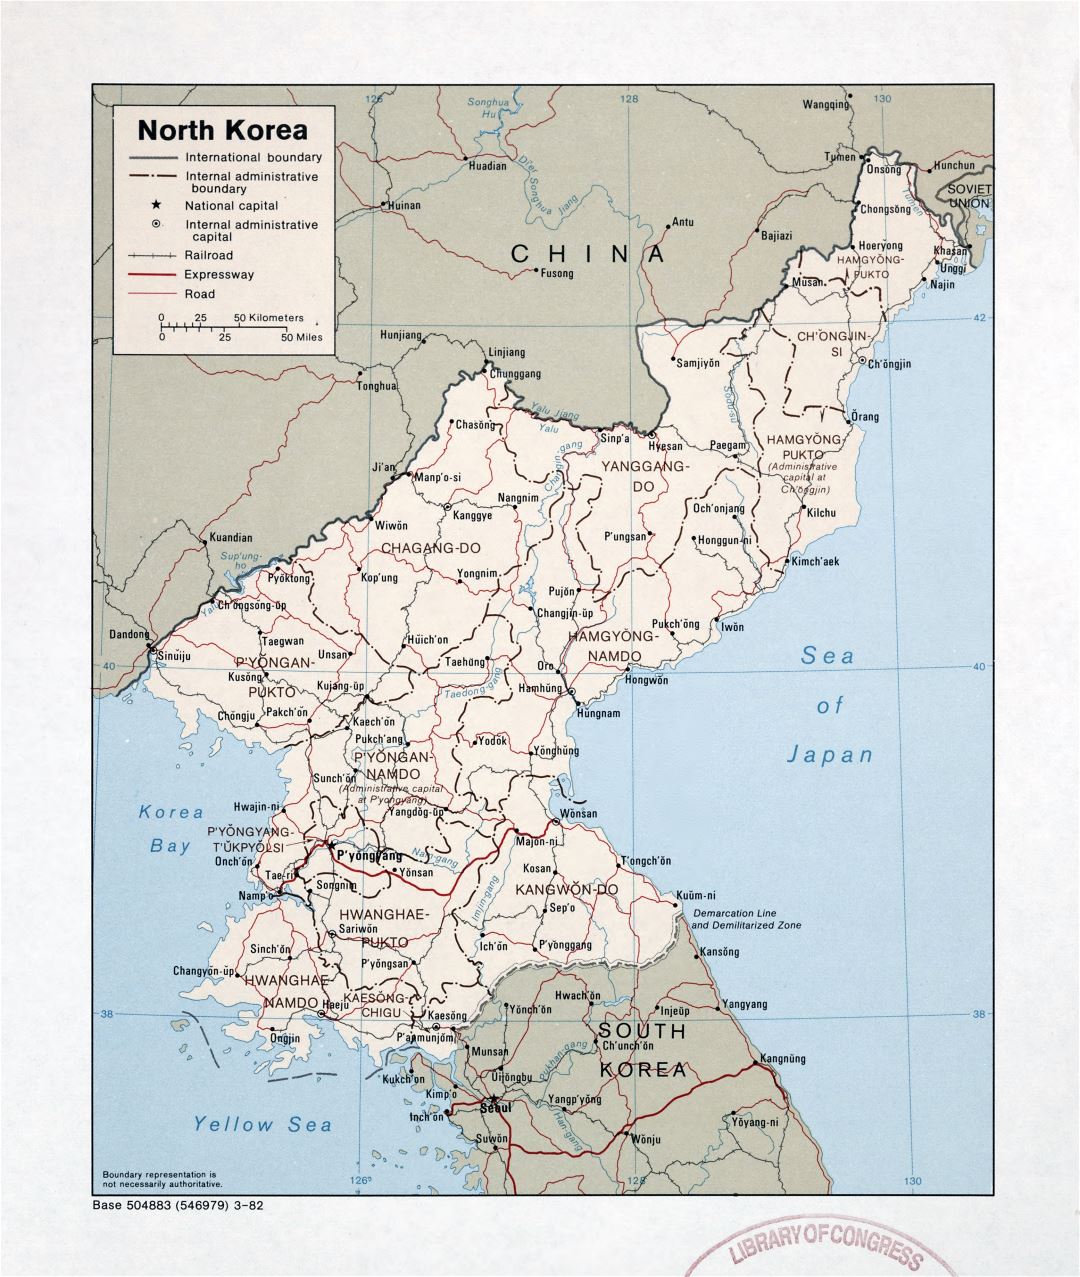 Grande detallado mapa político y administrativo de Corea del Norte con carreteras, ferrocarriles y principales ciudades - 1982